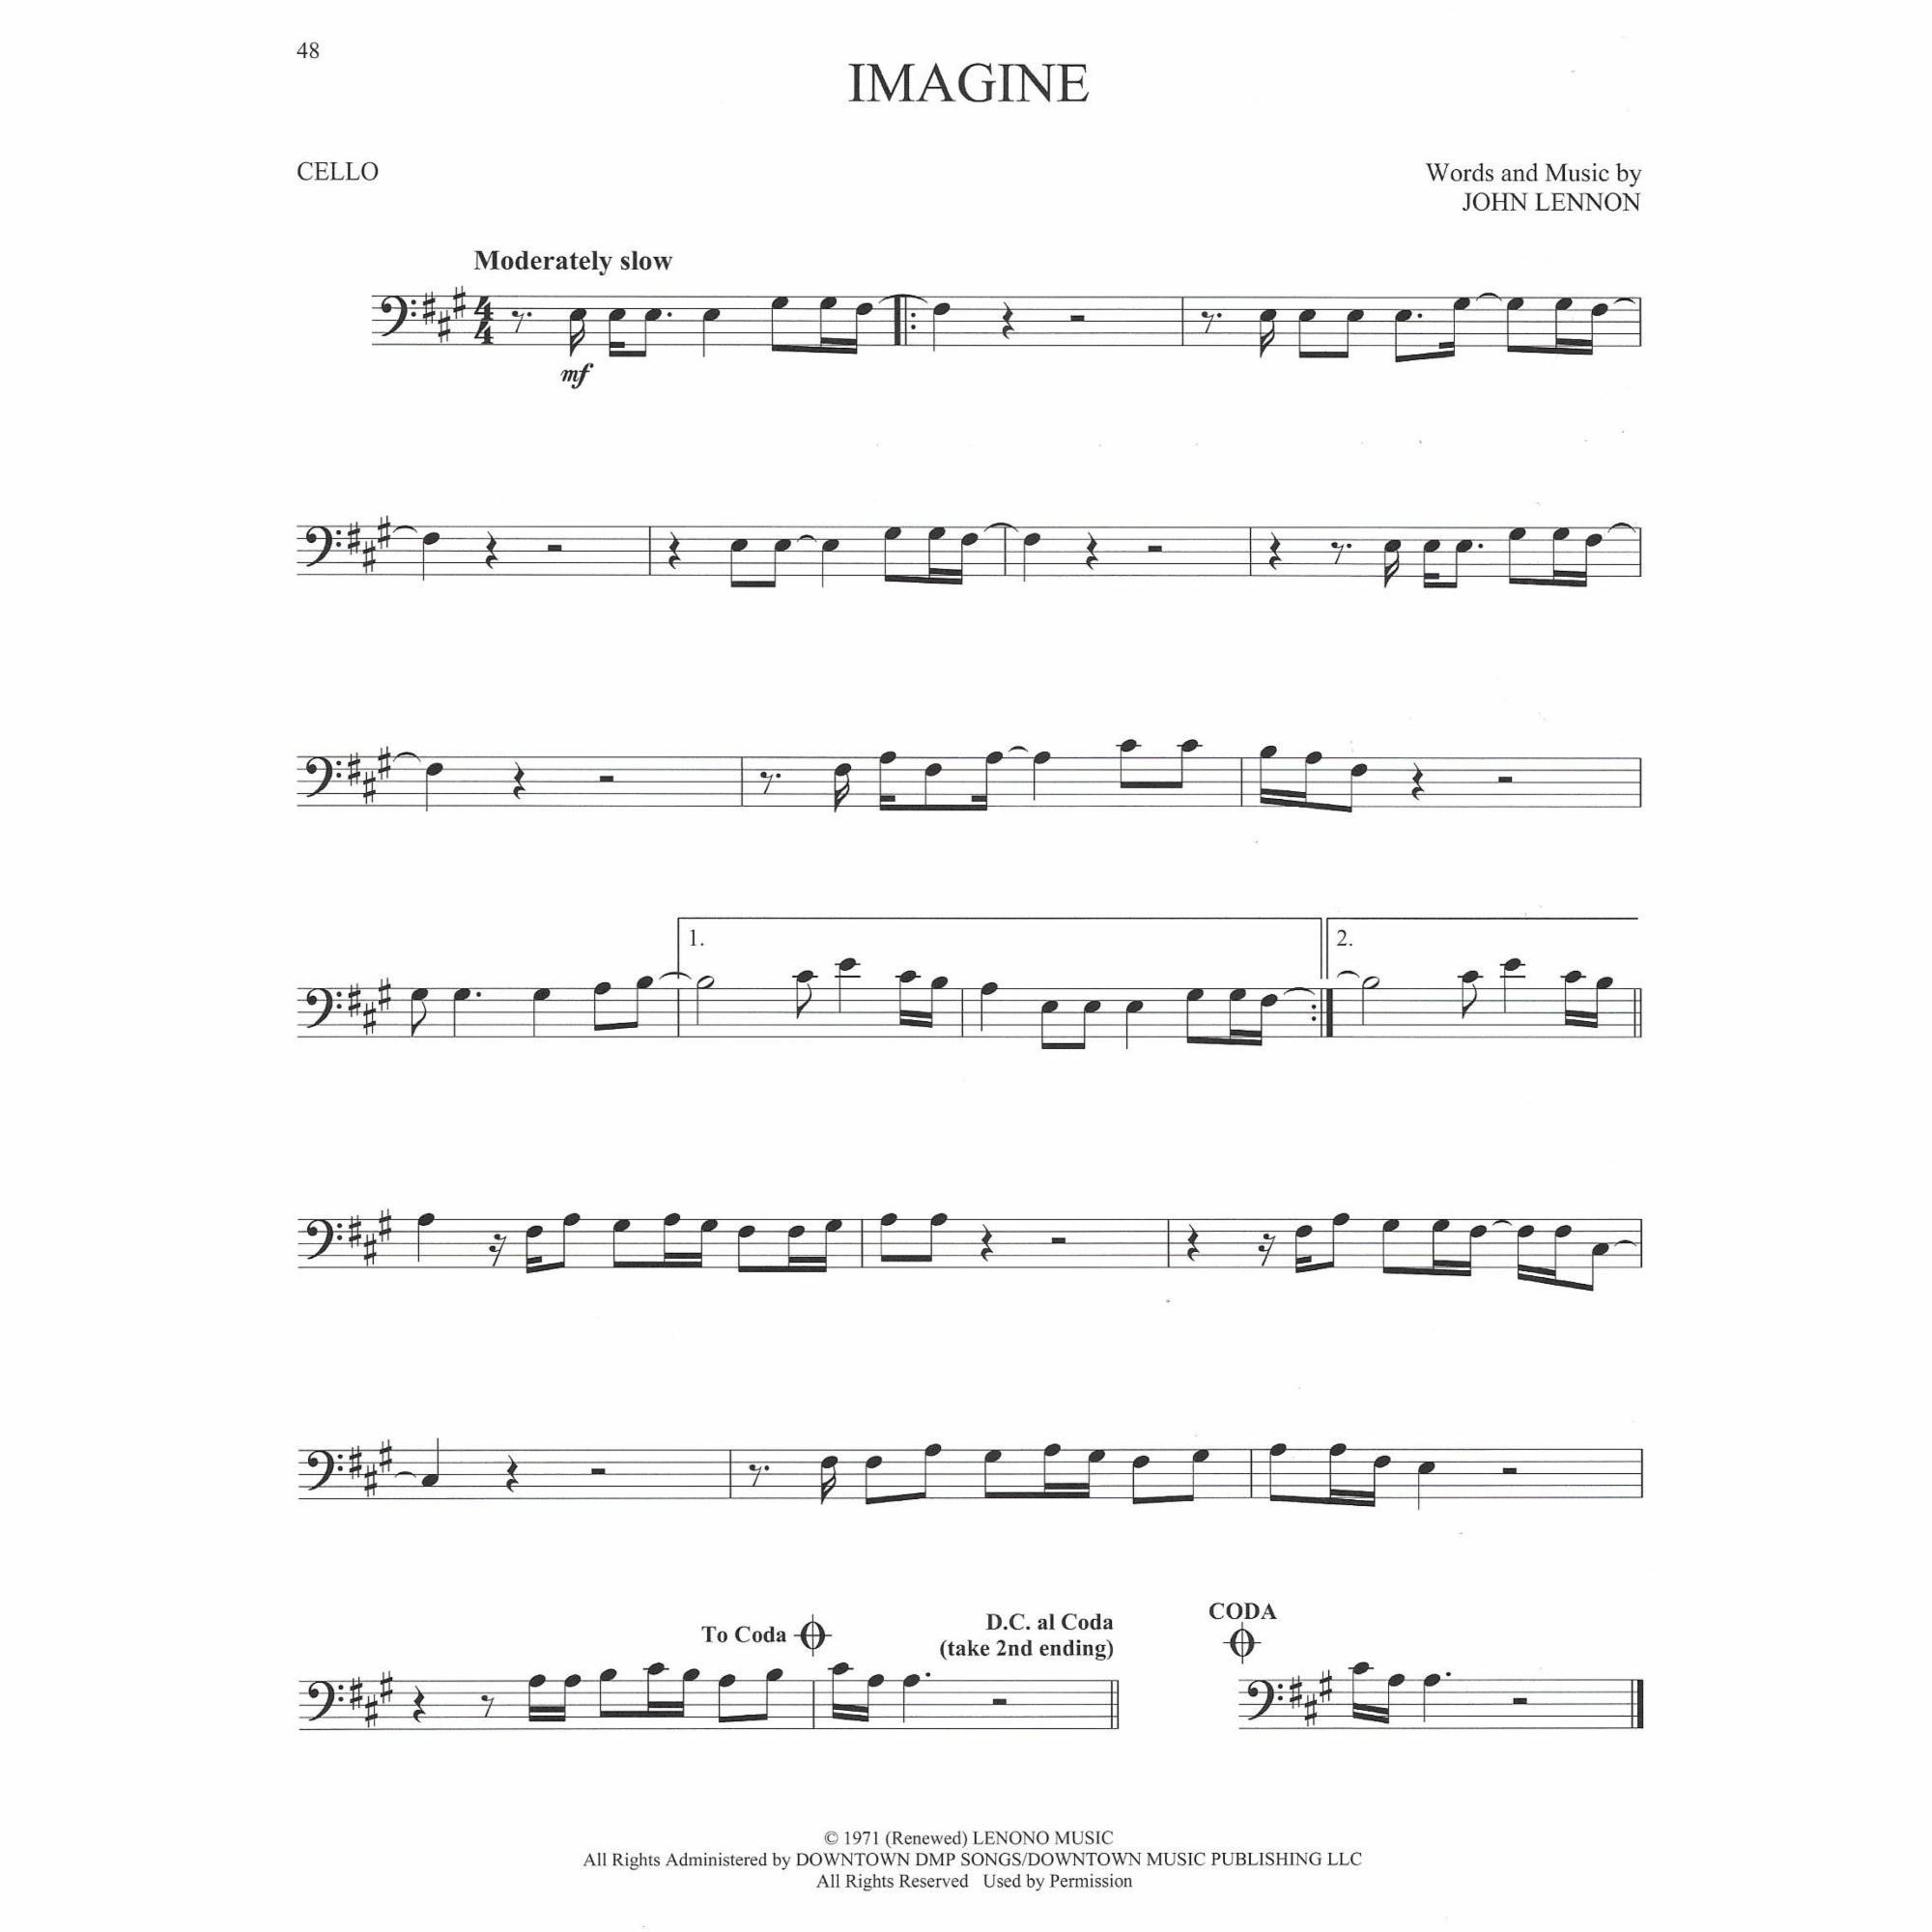 Sample: Cello (Pg. 48)